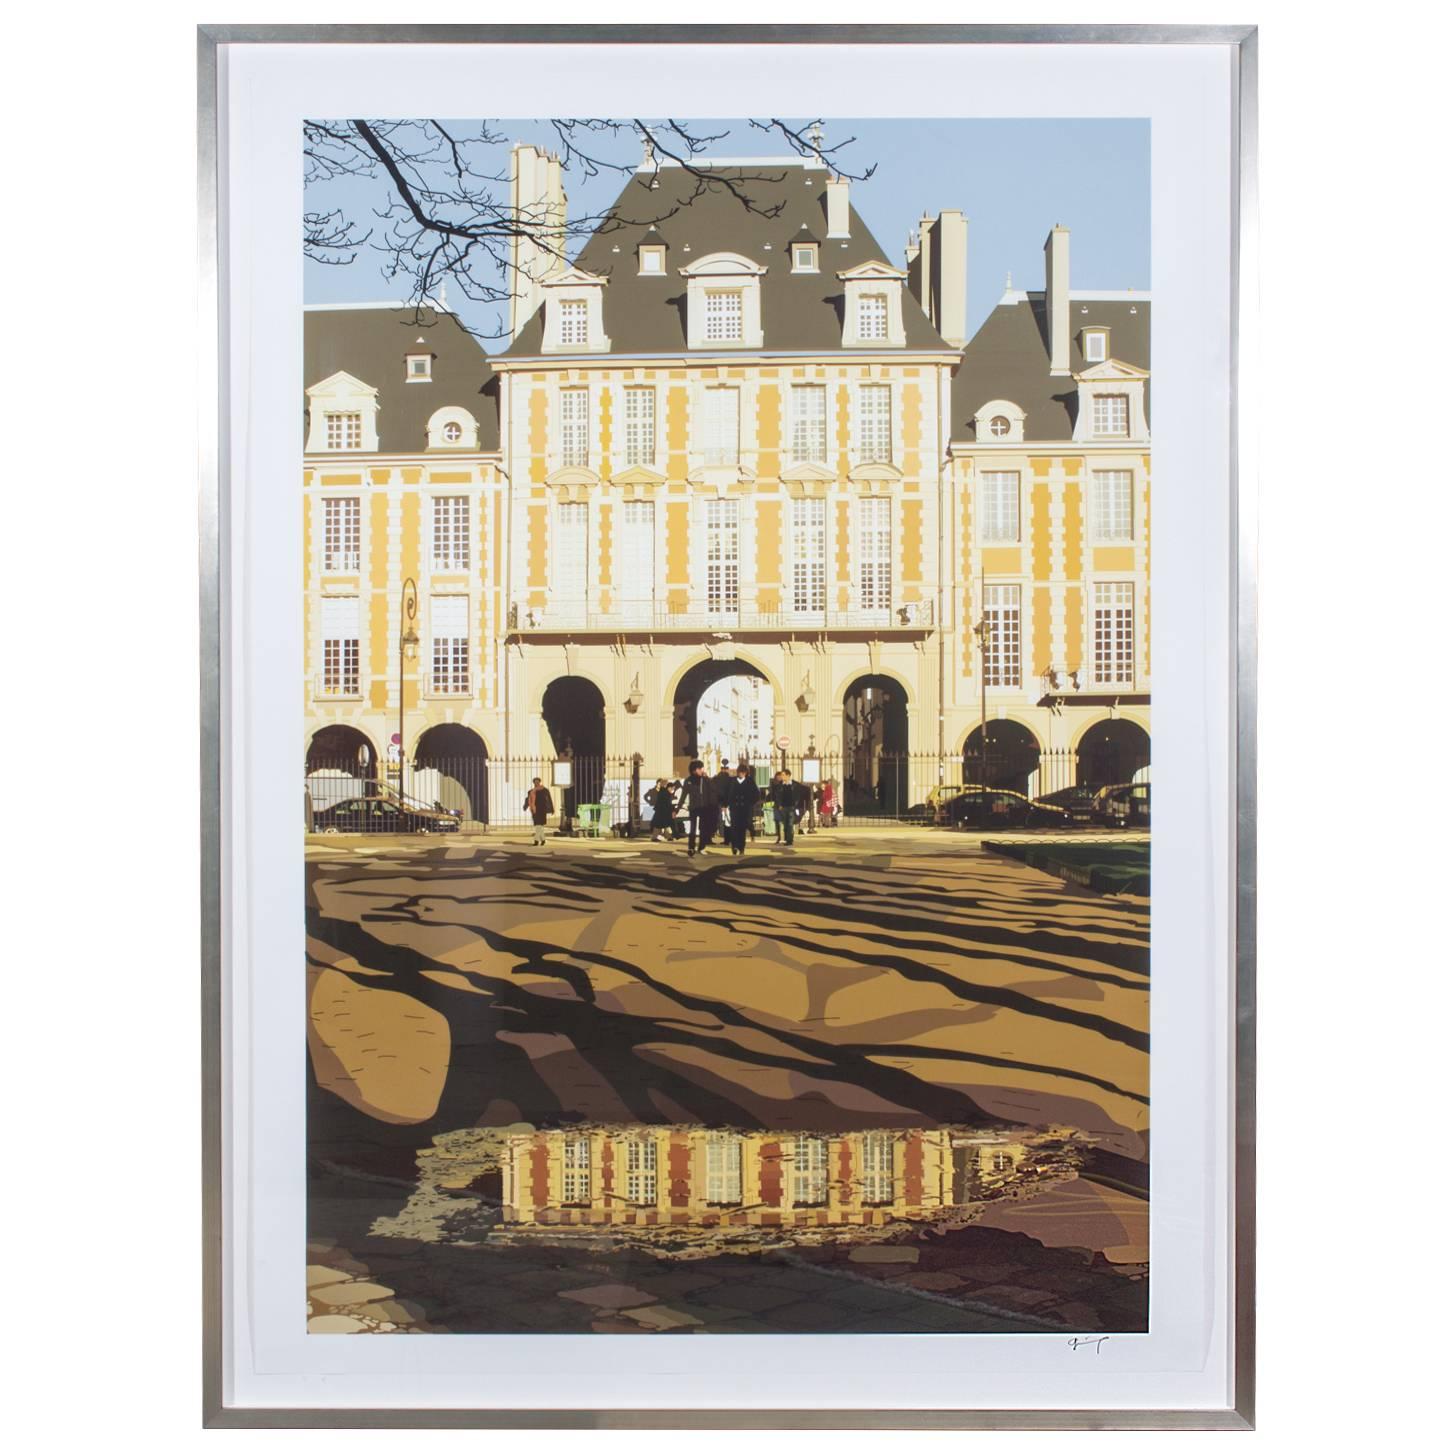 Framed "Place de Vosges" Lithograph by Parisian Artist Jean-Jacques Grief